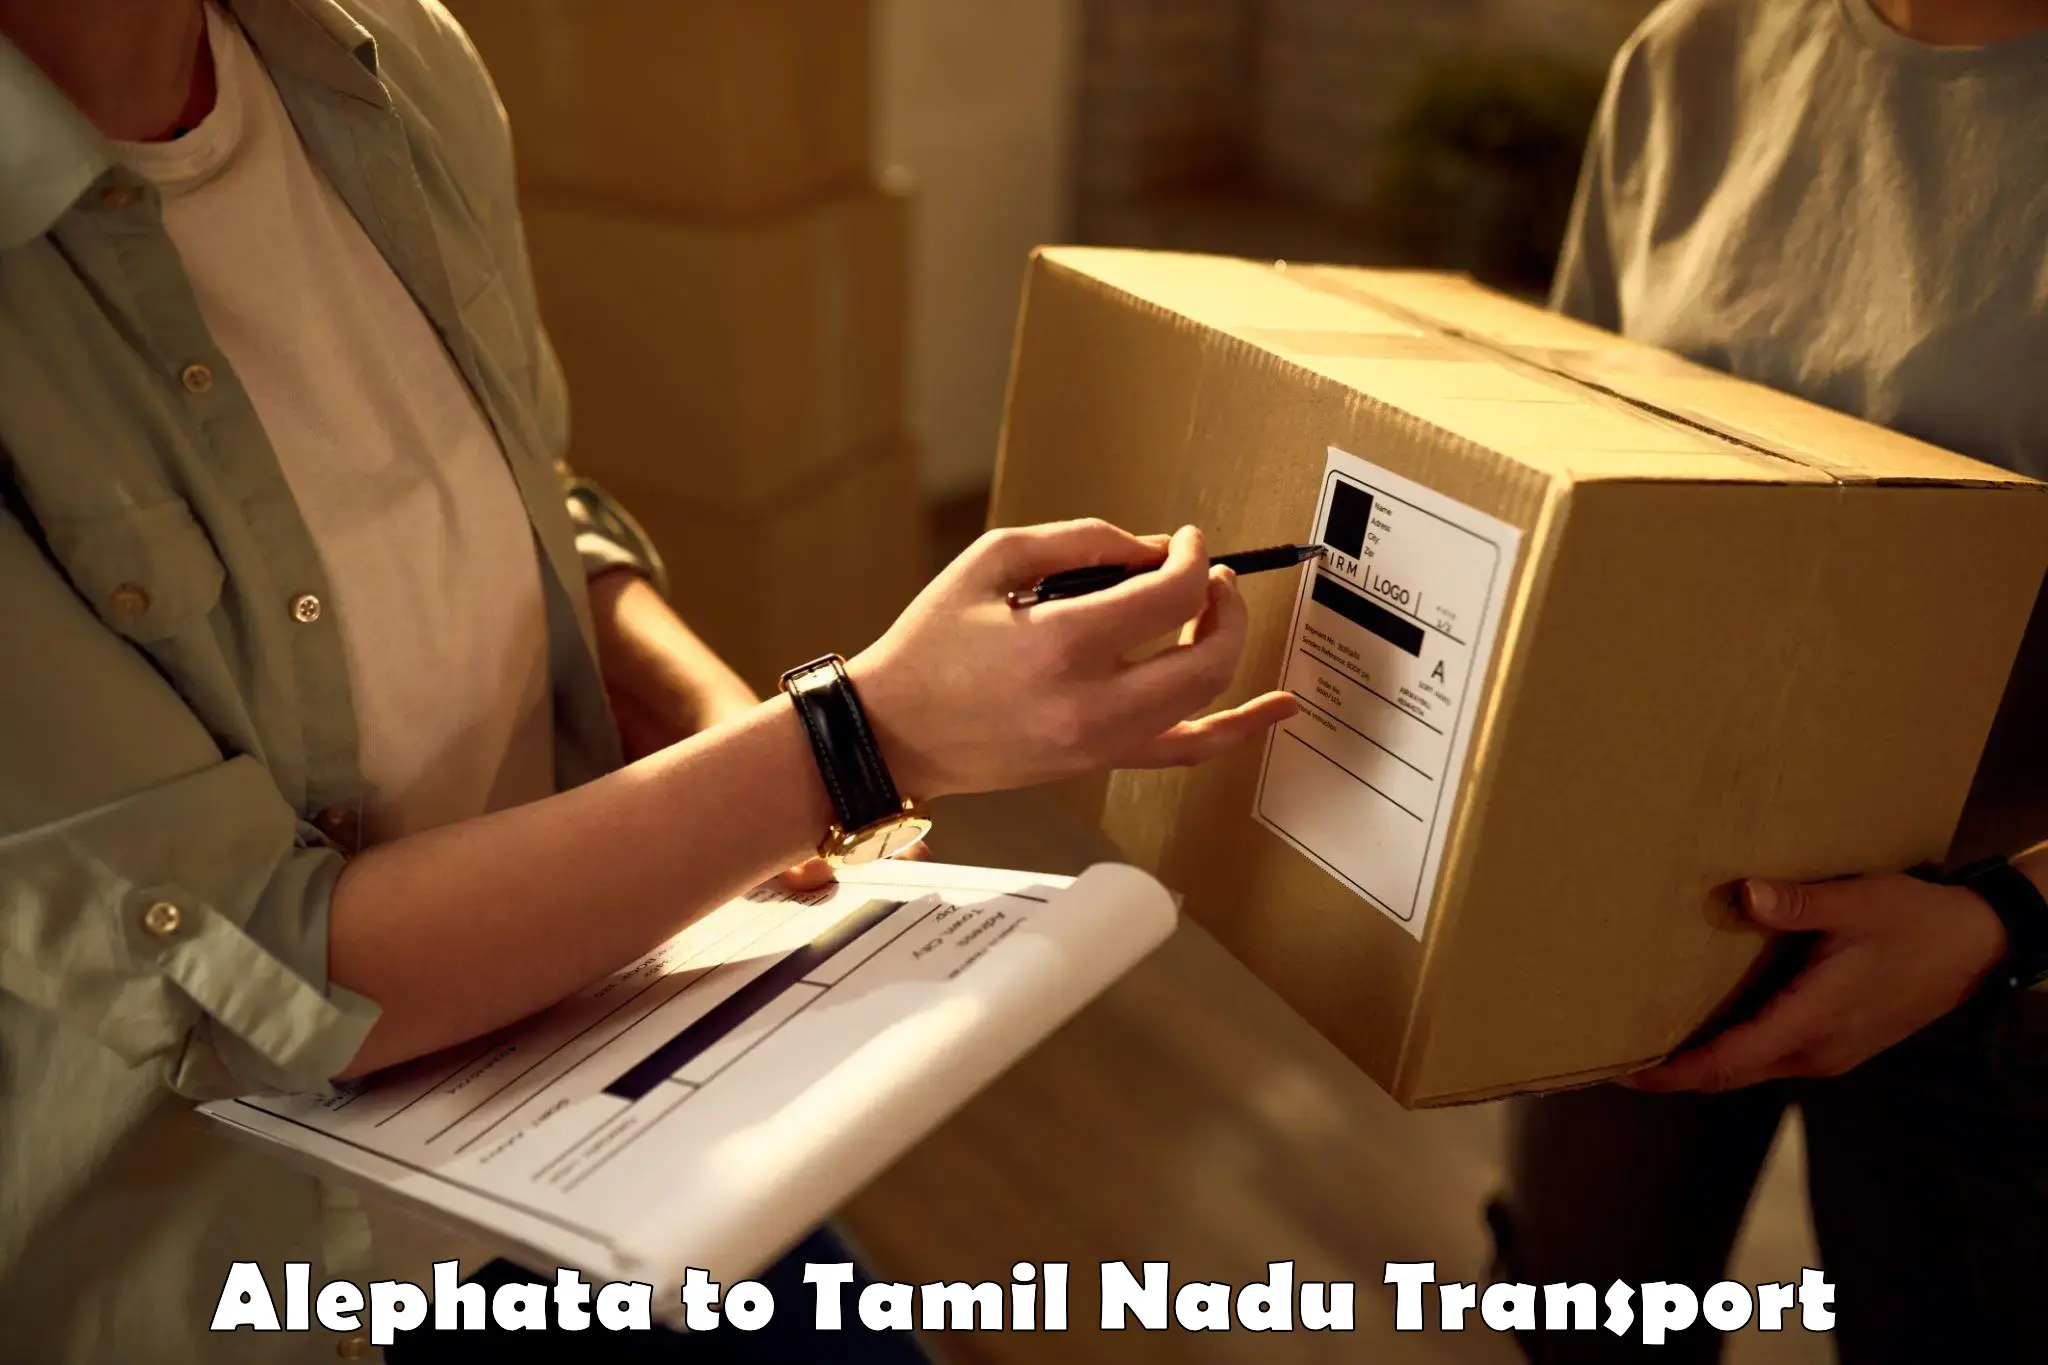 Pick up transport service Alephata to Tamil Nadu